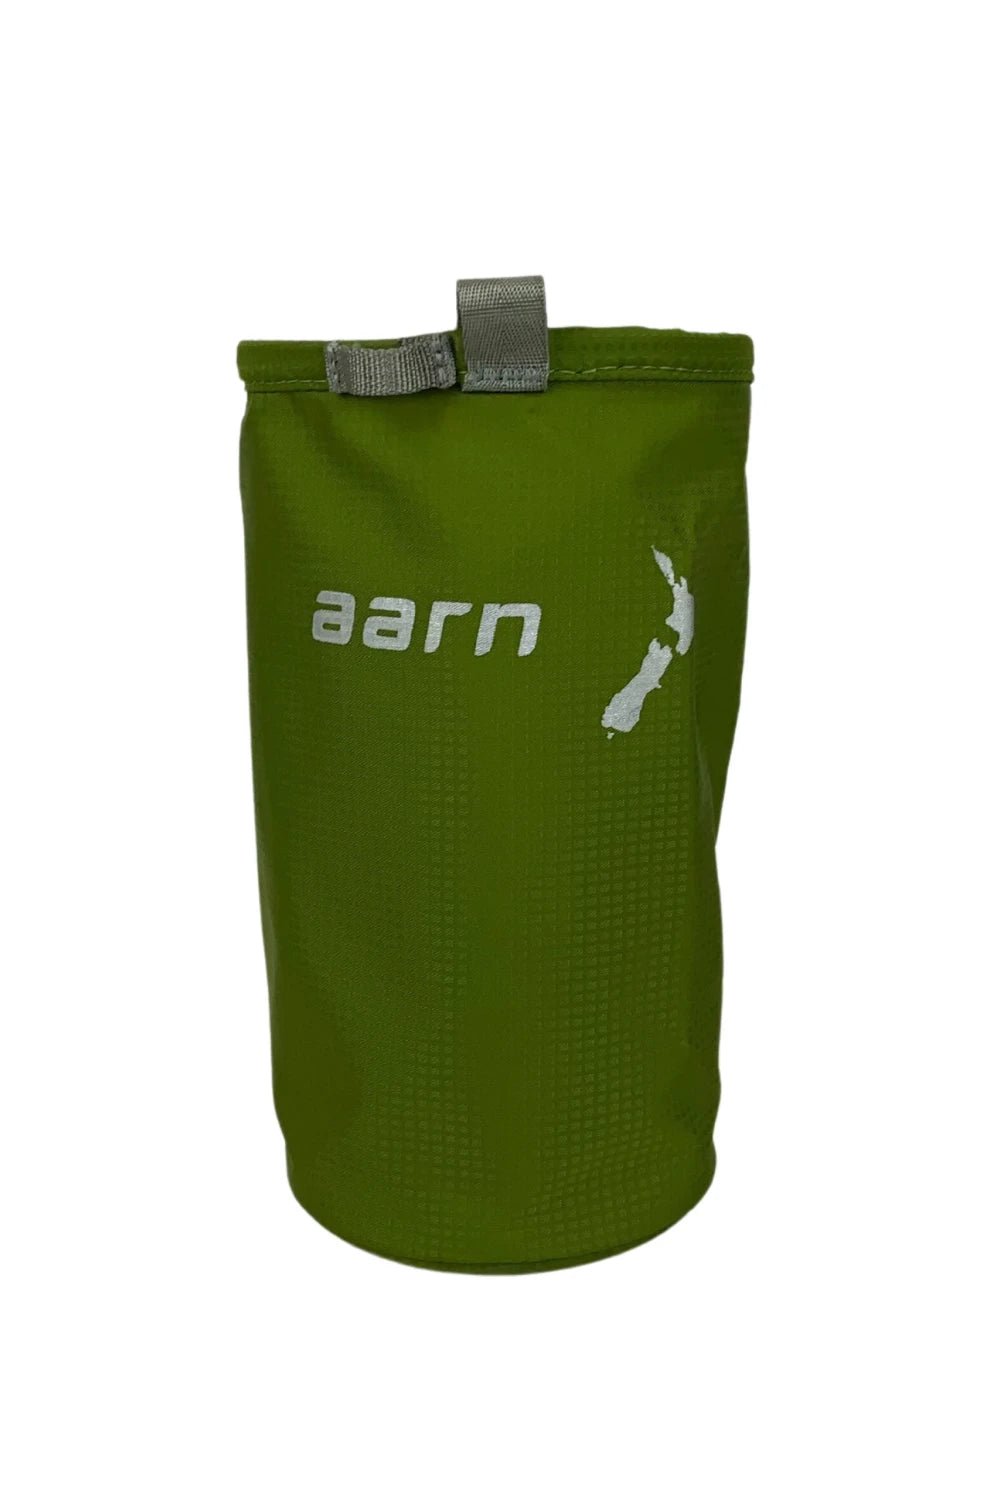 Aarn Water Bottle Holder | Coffee Outdoors